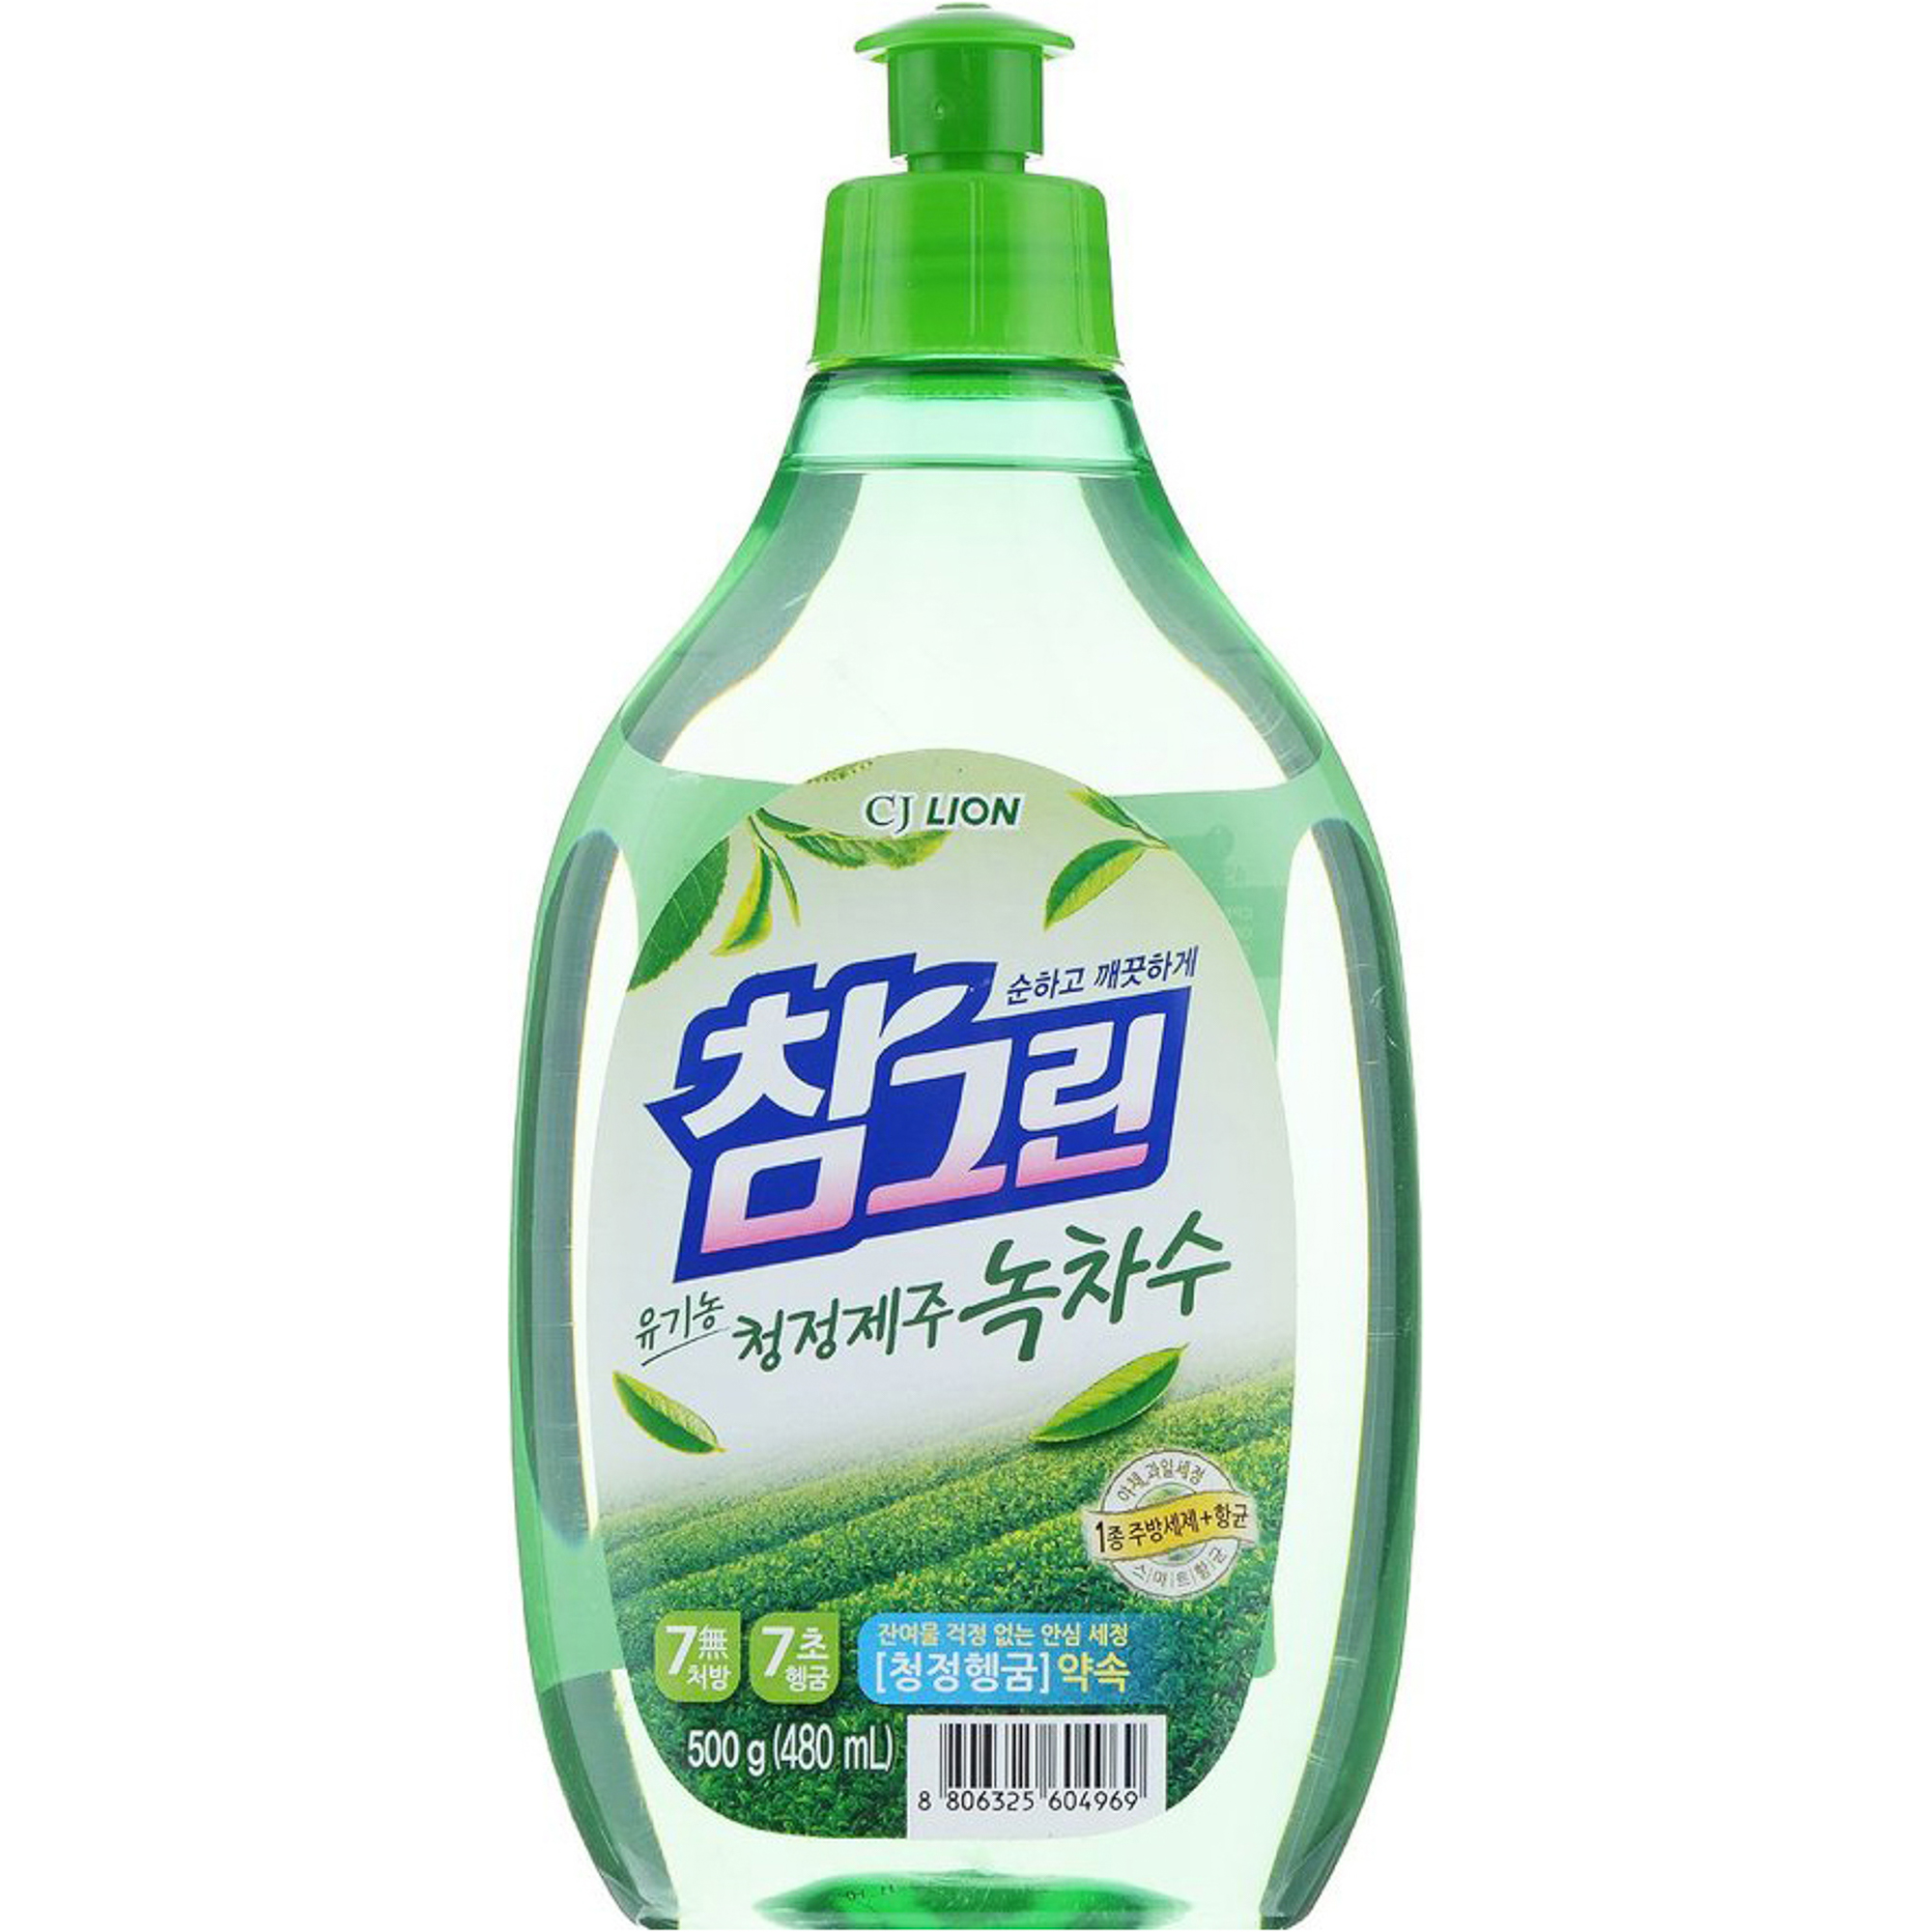 Корейское для мытья. Lion Chamgreen 500 мл зеленый. Средство для мытья посуды, овощей и фруктов (зеленый чай) Charmgreen Lion 1200мл. CJ Lion средство для мытья посуды. Lion жидкость для мытья посуды Chamgreen зелёный чай.